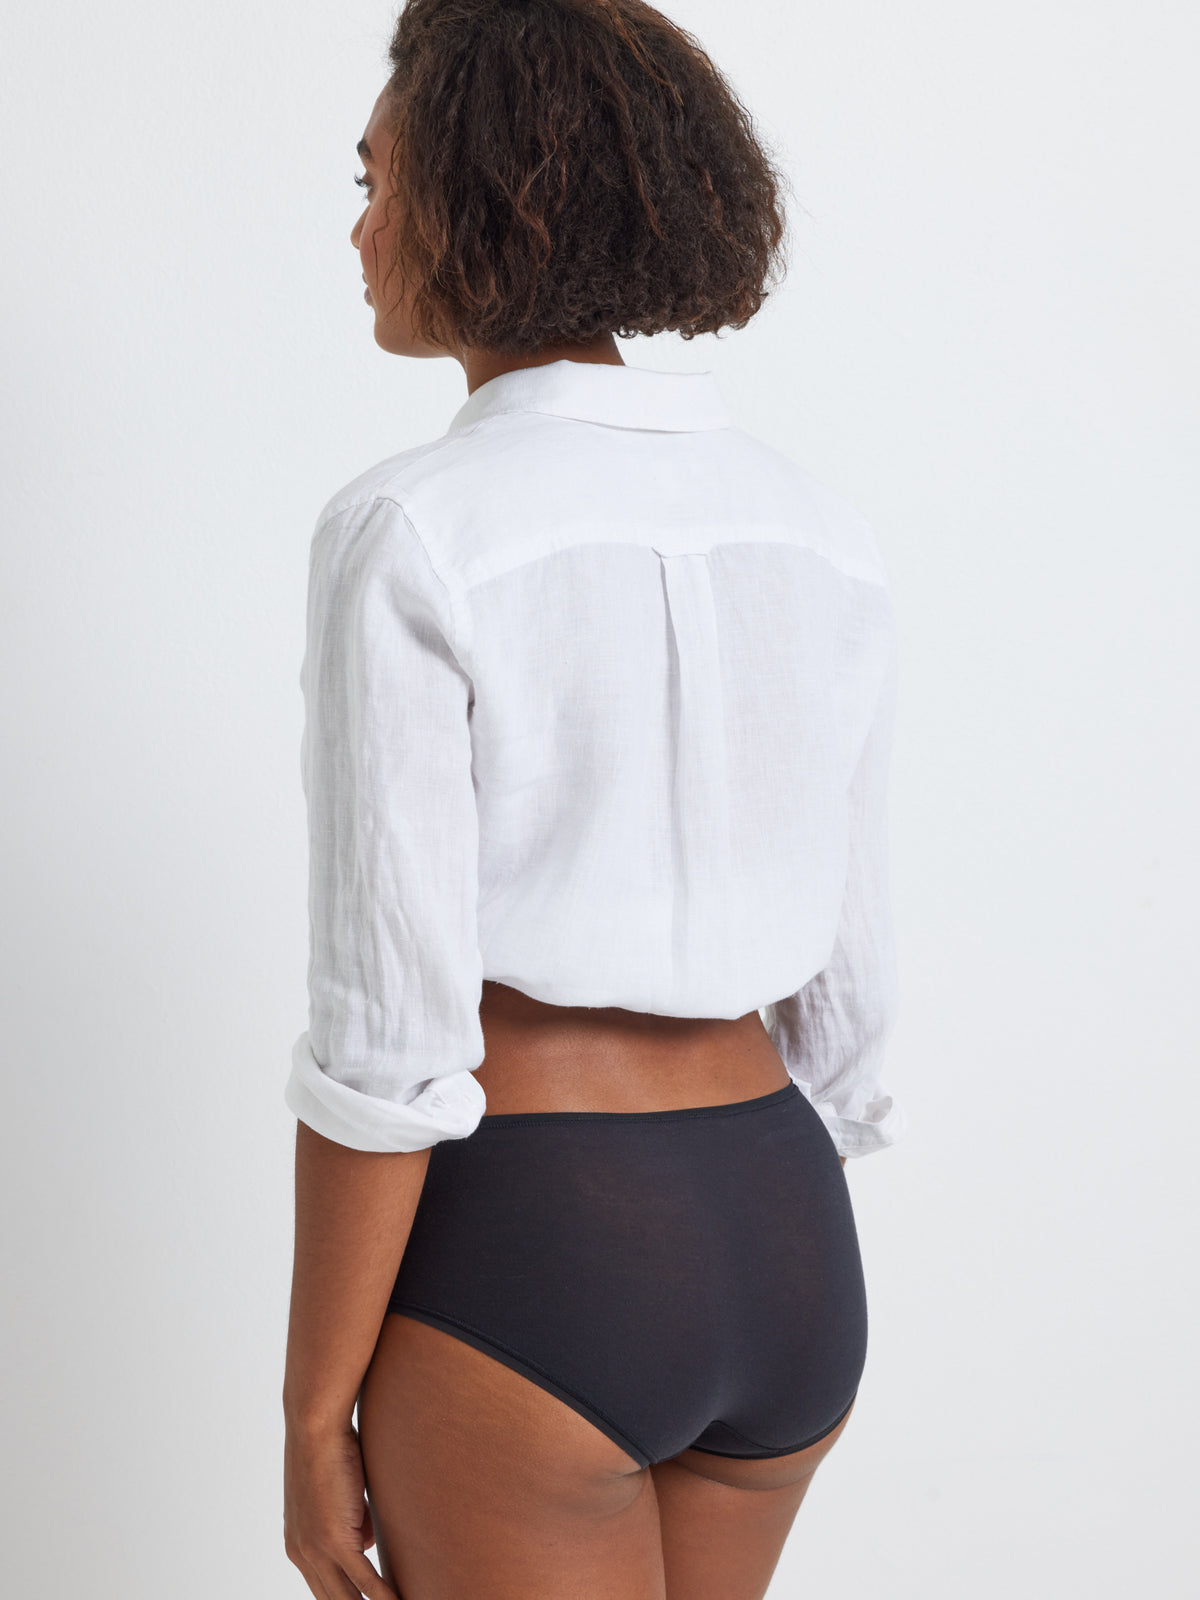 100% Cotton Black Full Brief Underwear by Kayser Lingerie